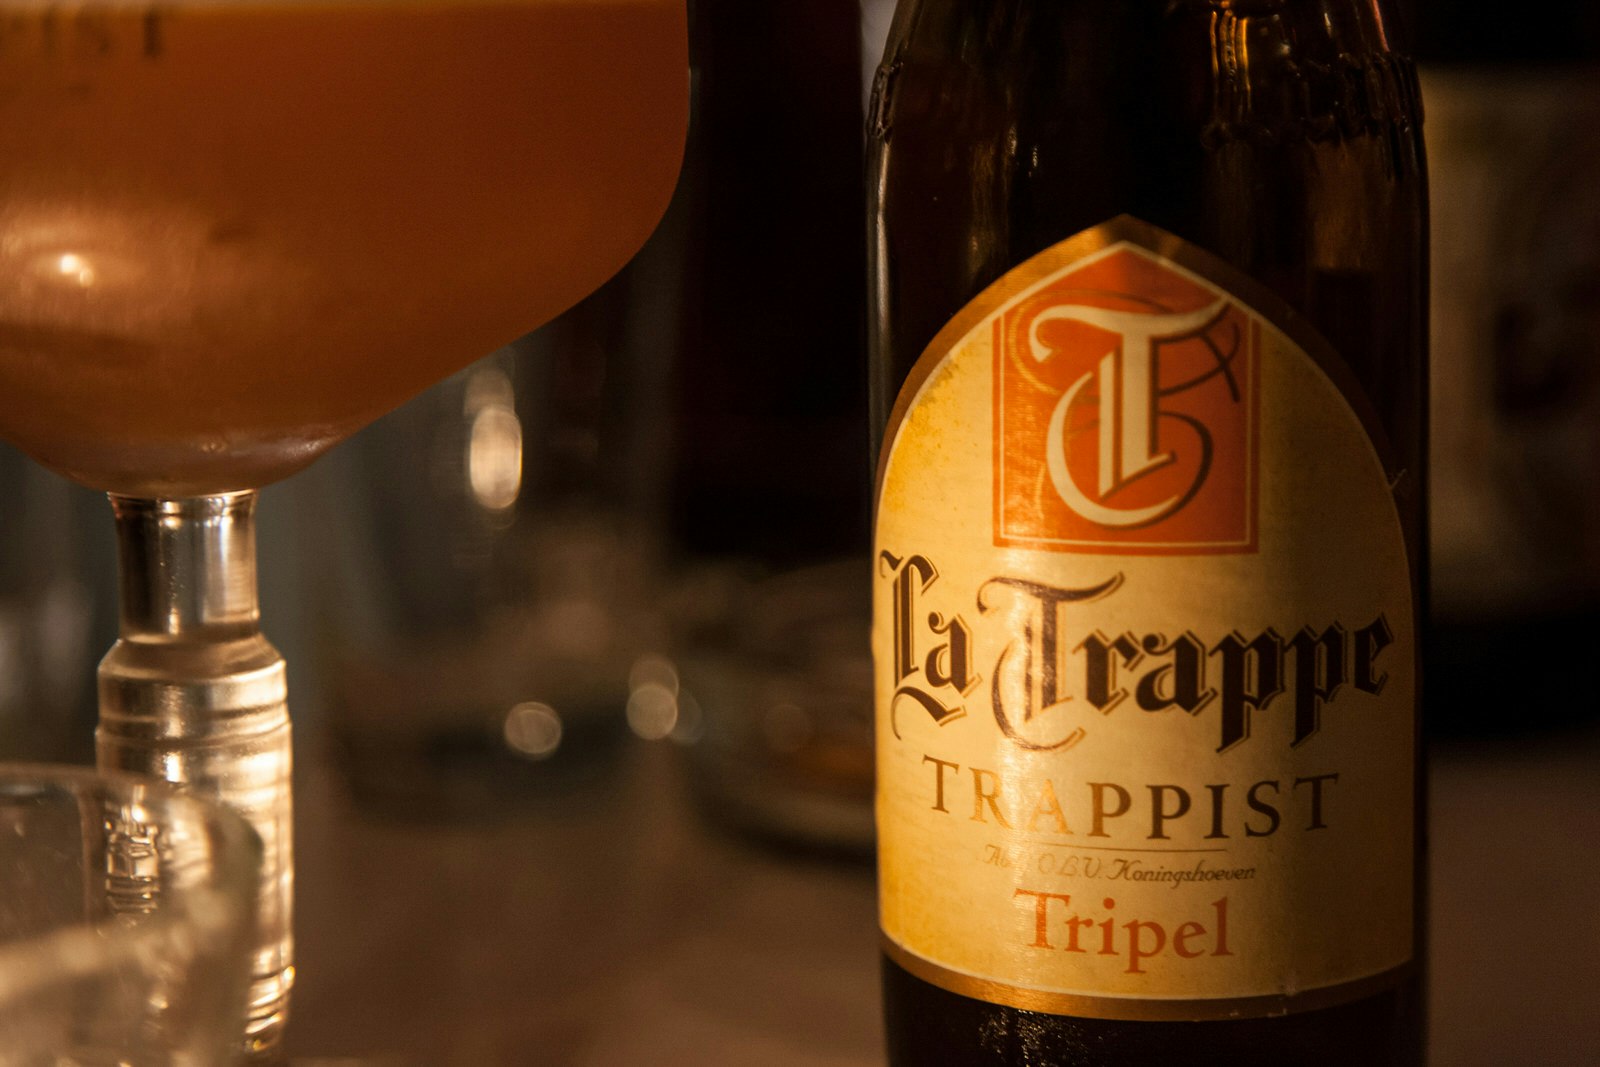 Bier Bottle of La Trappe Tripel. It is a Dutch Trappist beer from the abbey of De Koningshoeven Brewery, produced in Berket Enschot